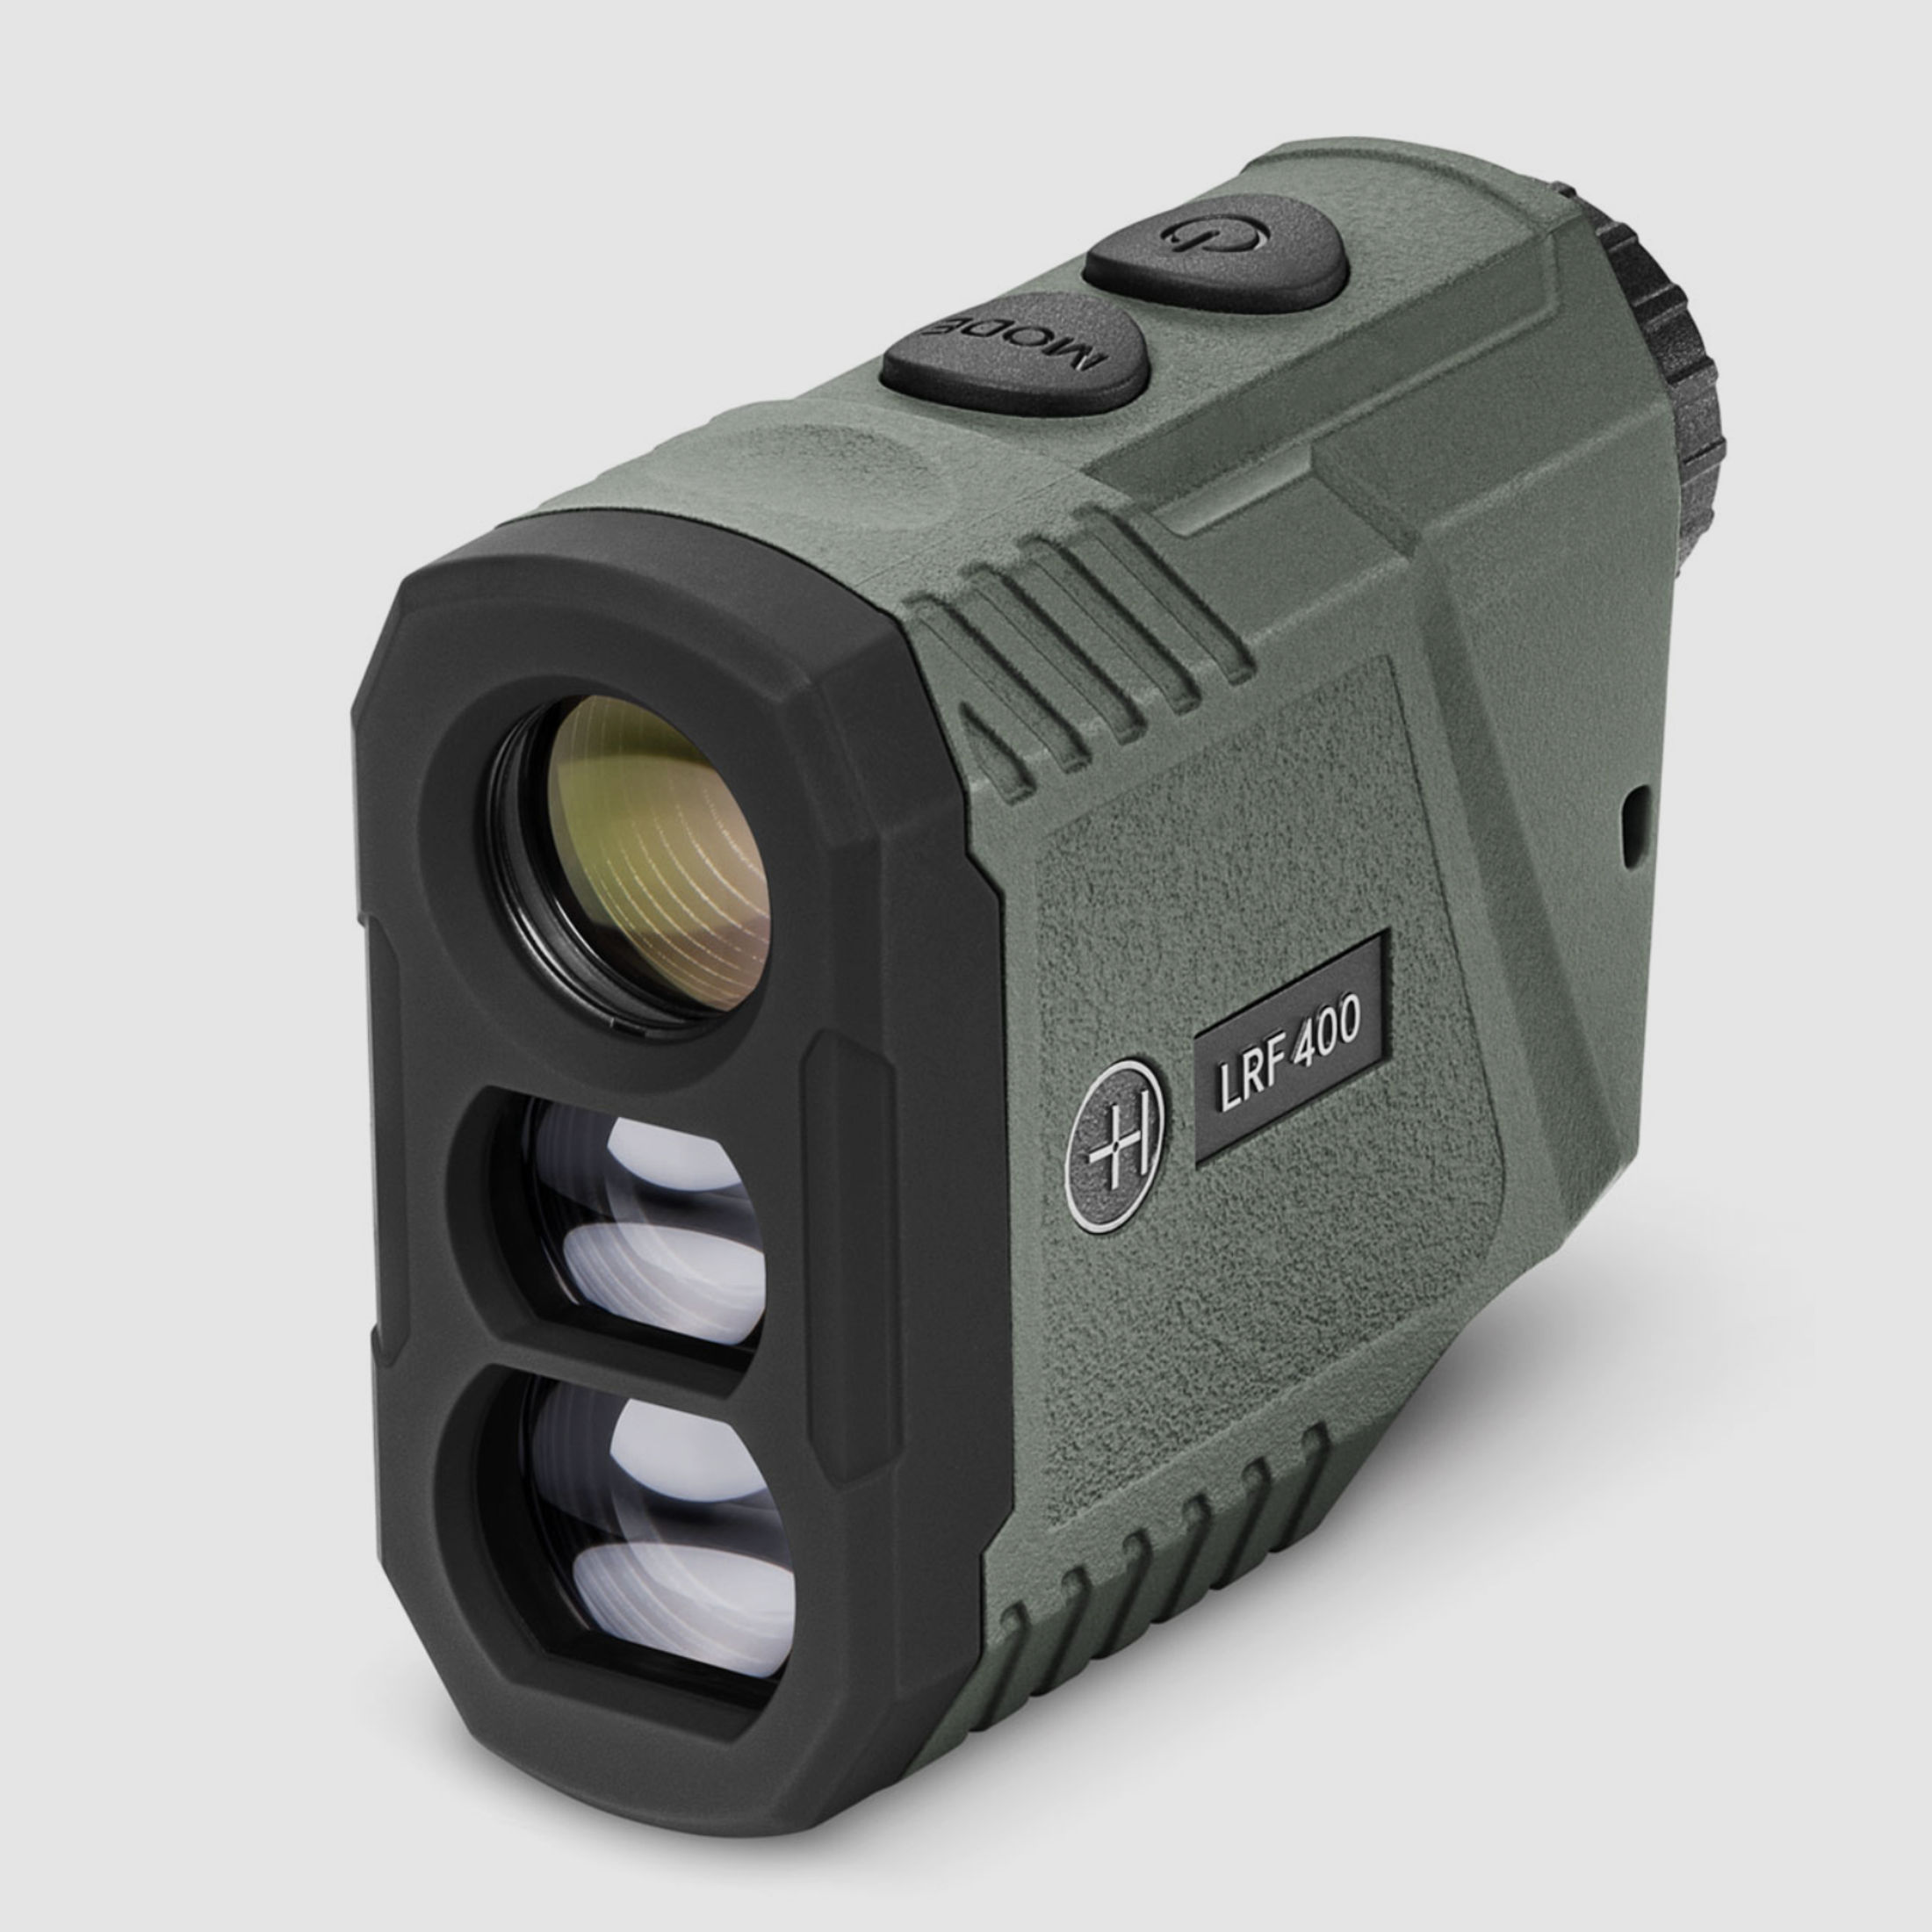 HAWKE 41020 Laser Entfernungsmesser LRF 400